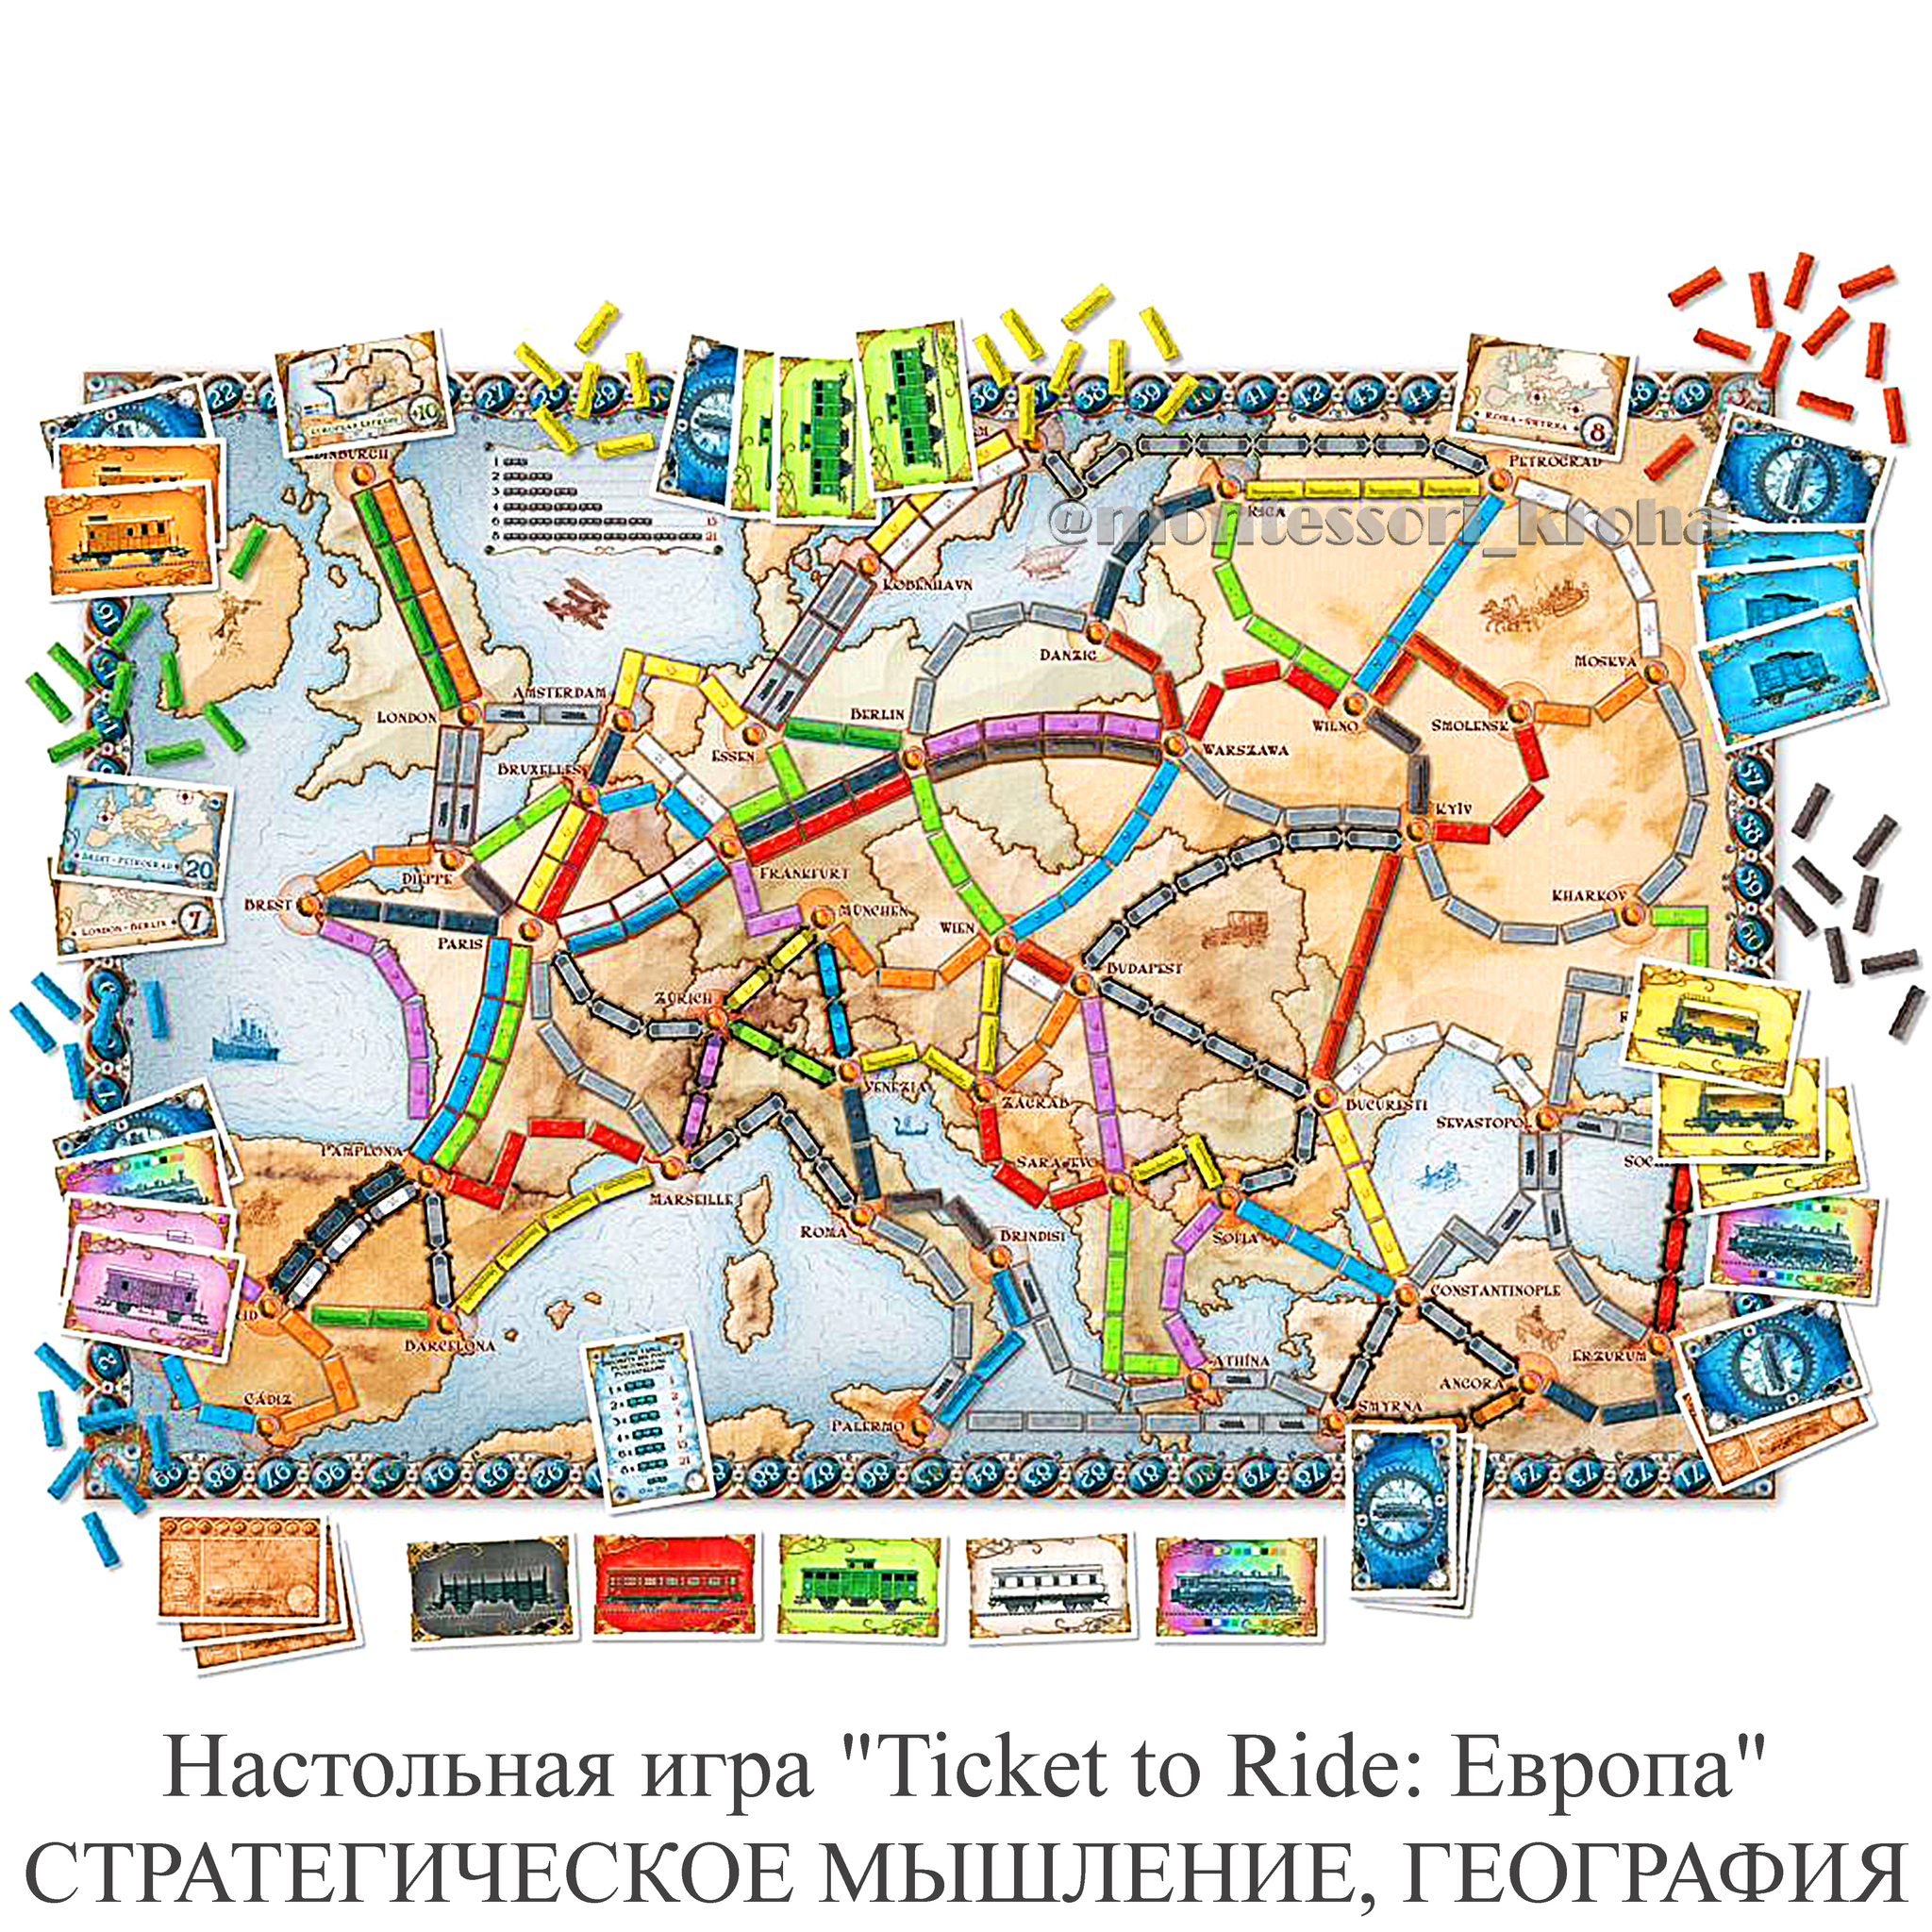 Ticket to Ride Европа настольная игра. Карта для игры ticket to Ride Europa. Ticket to Ride: Европа 1912 настольная игра. Ticket to Ride поезда.